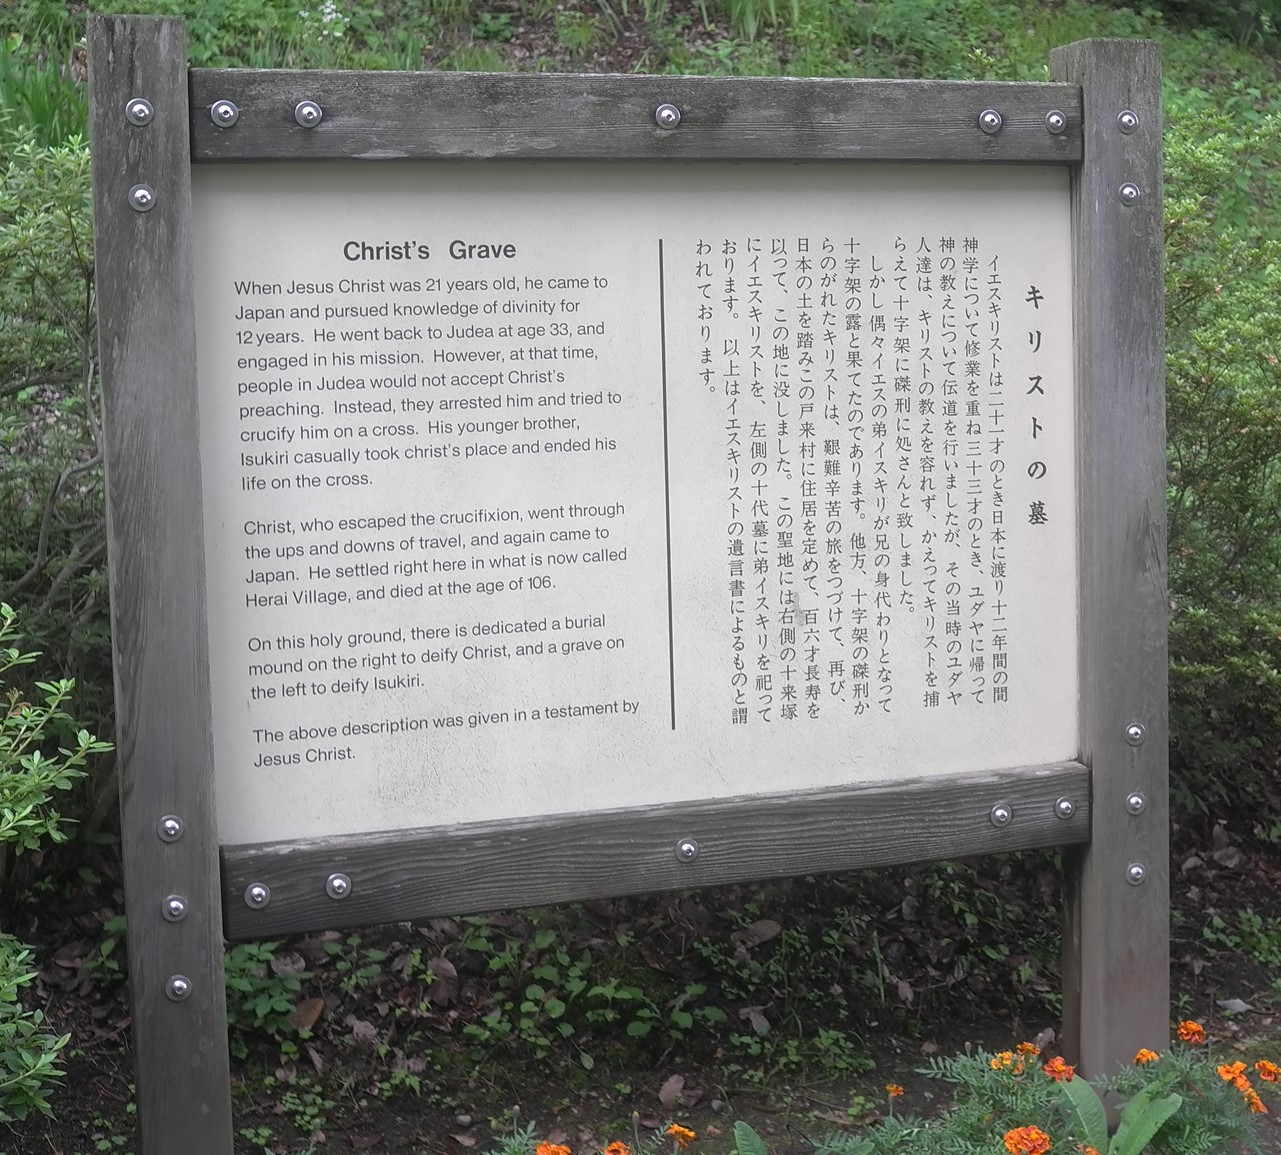 「キリストの墓」について日本語と英語で説明されている